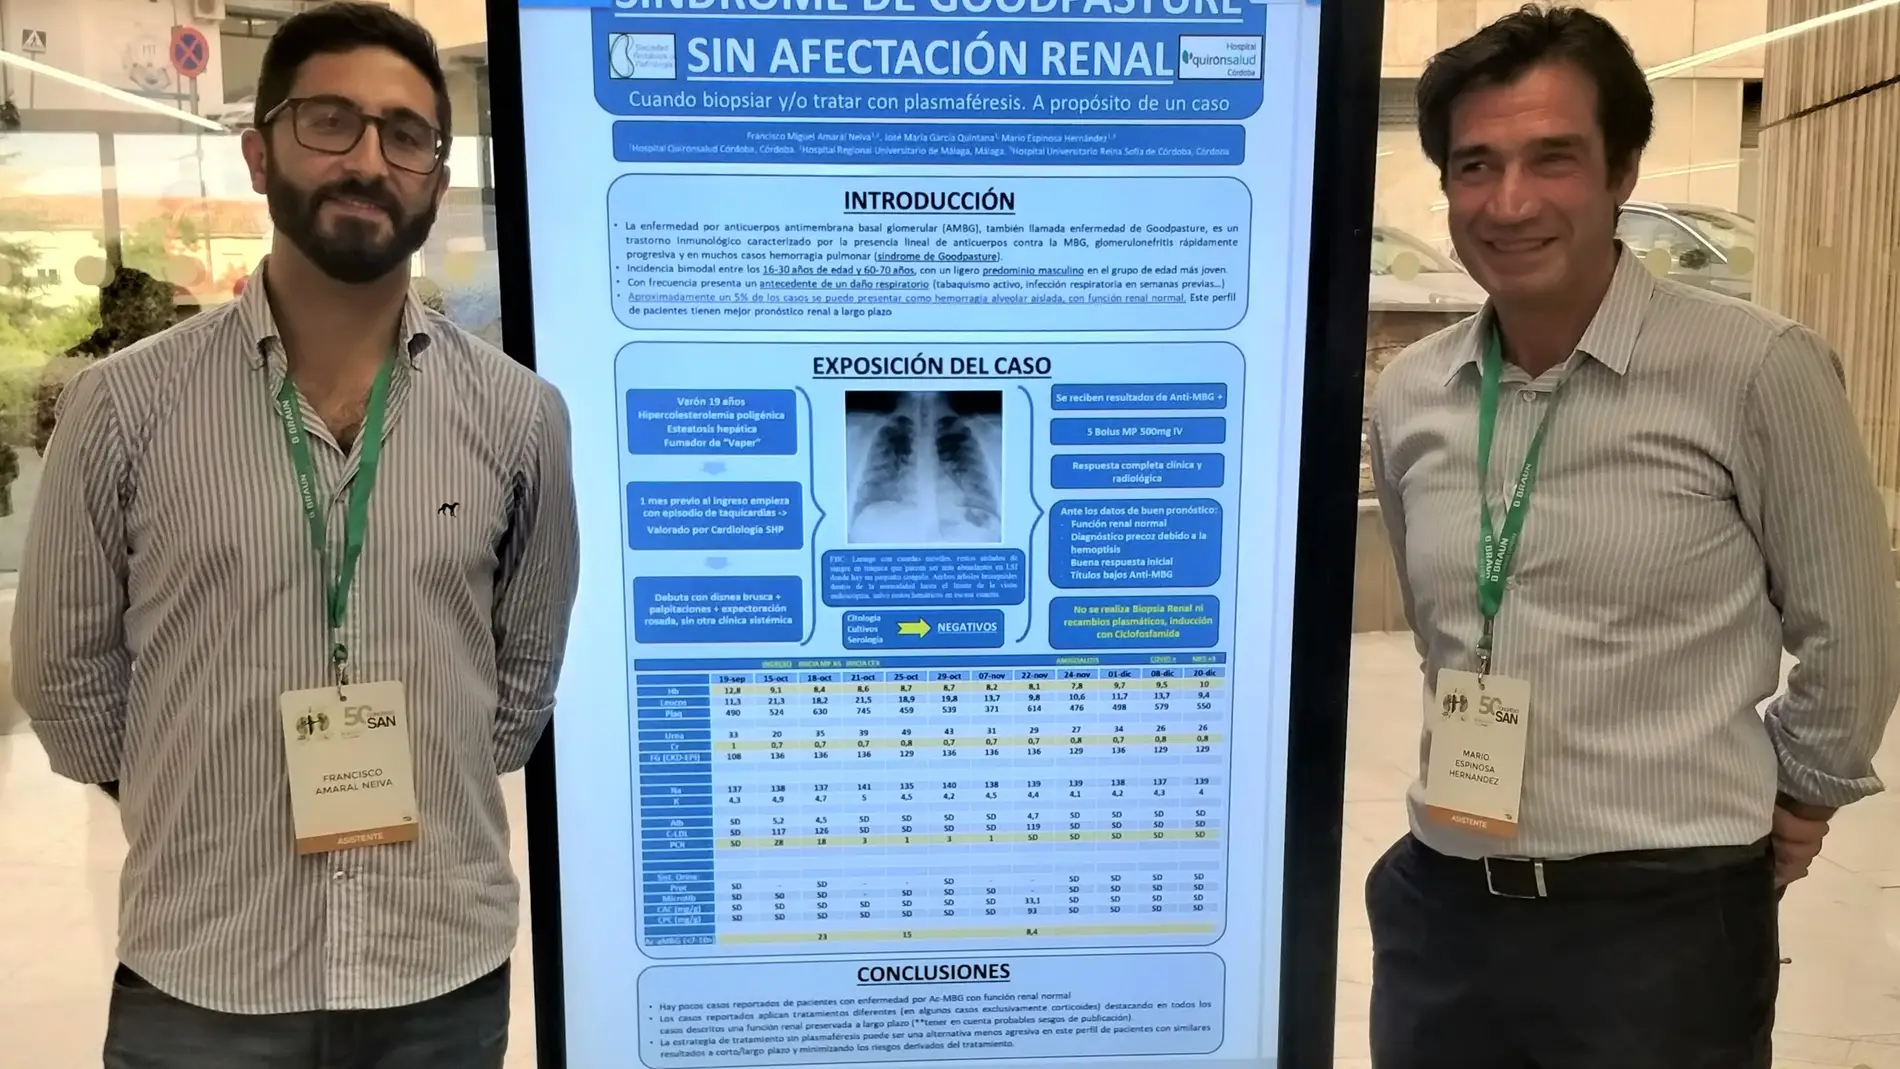 De izquierda a derecha, los doctores Amaral-Neiva y Espinosa junto al póster científico sobre este caso.